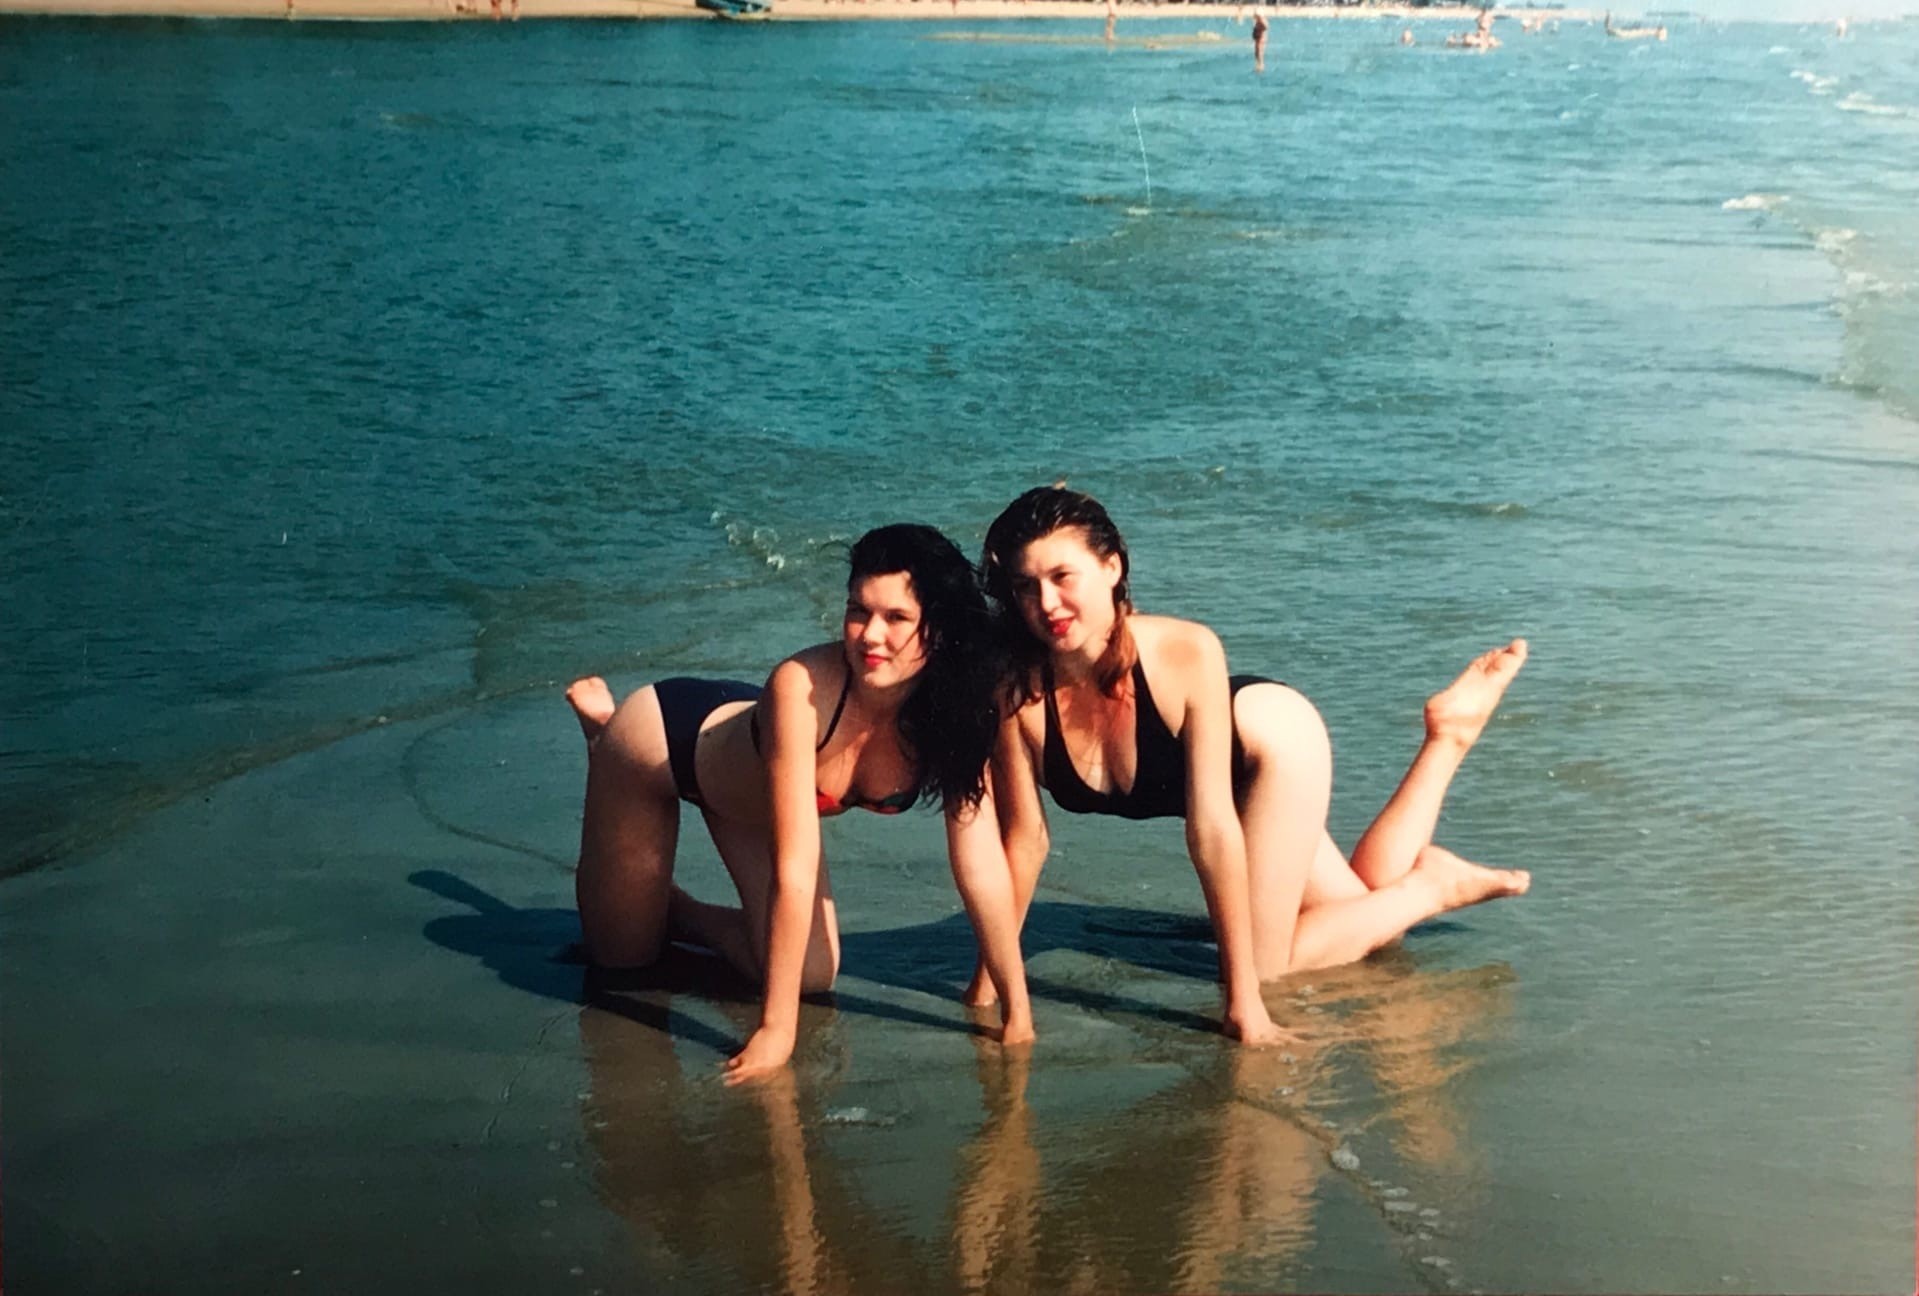 Сестра позирует. Сестра на отдыхе. Позирование сестры на море. Пляж 90-е. Девушки 1996 года.